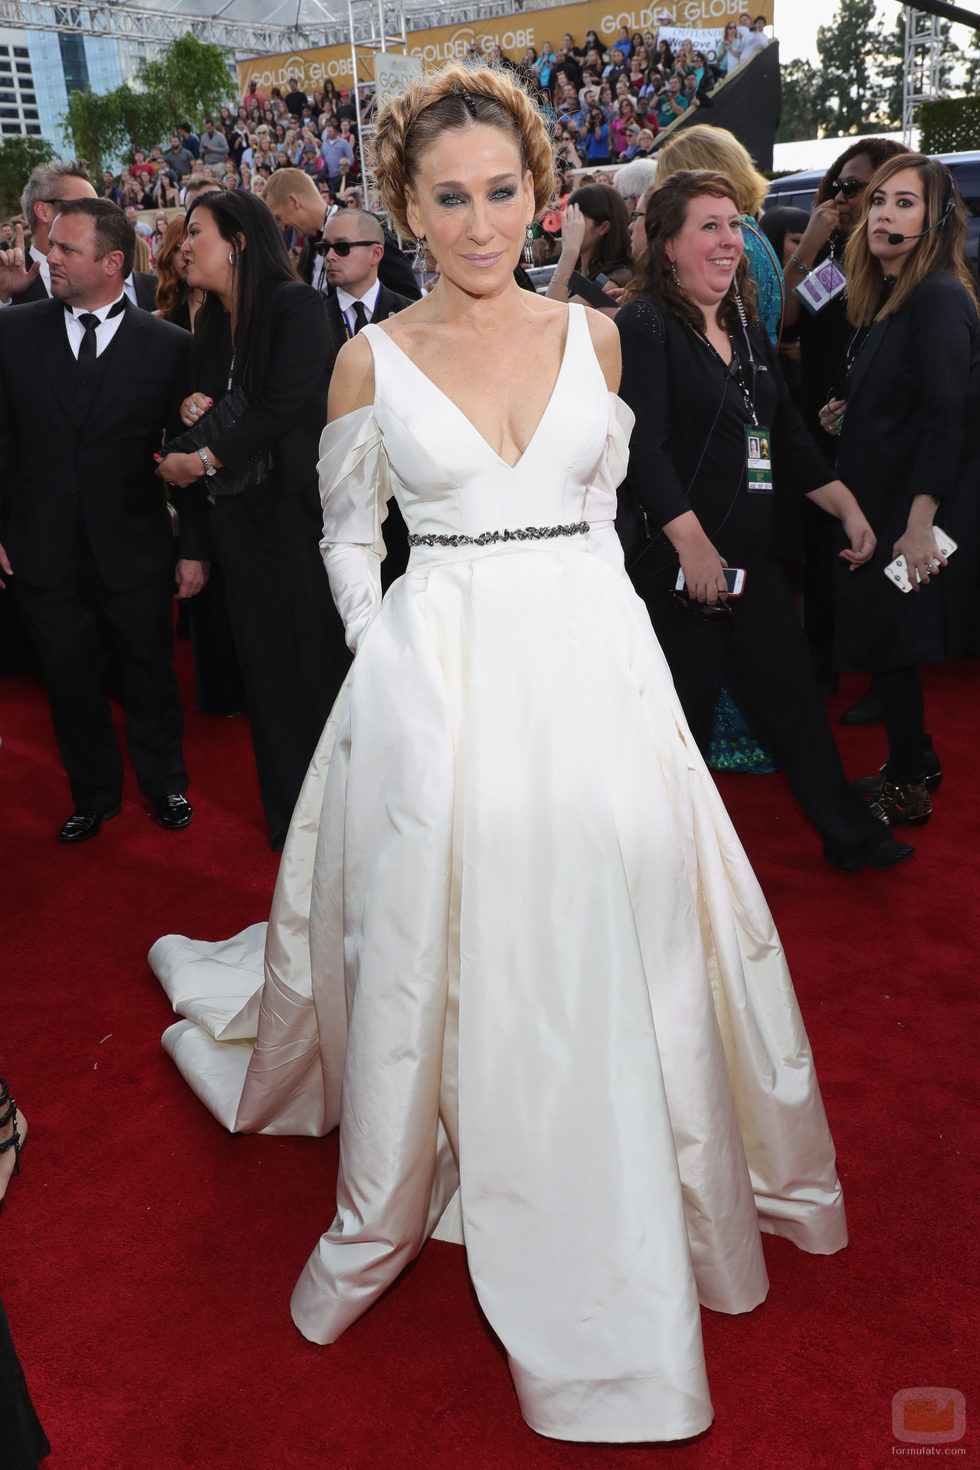 Sarah Jessica Parker, nominada por 'Divorce', posa en la Alfombra Roja de la 74ª edición de los Globos de Oro